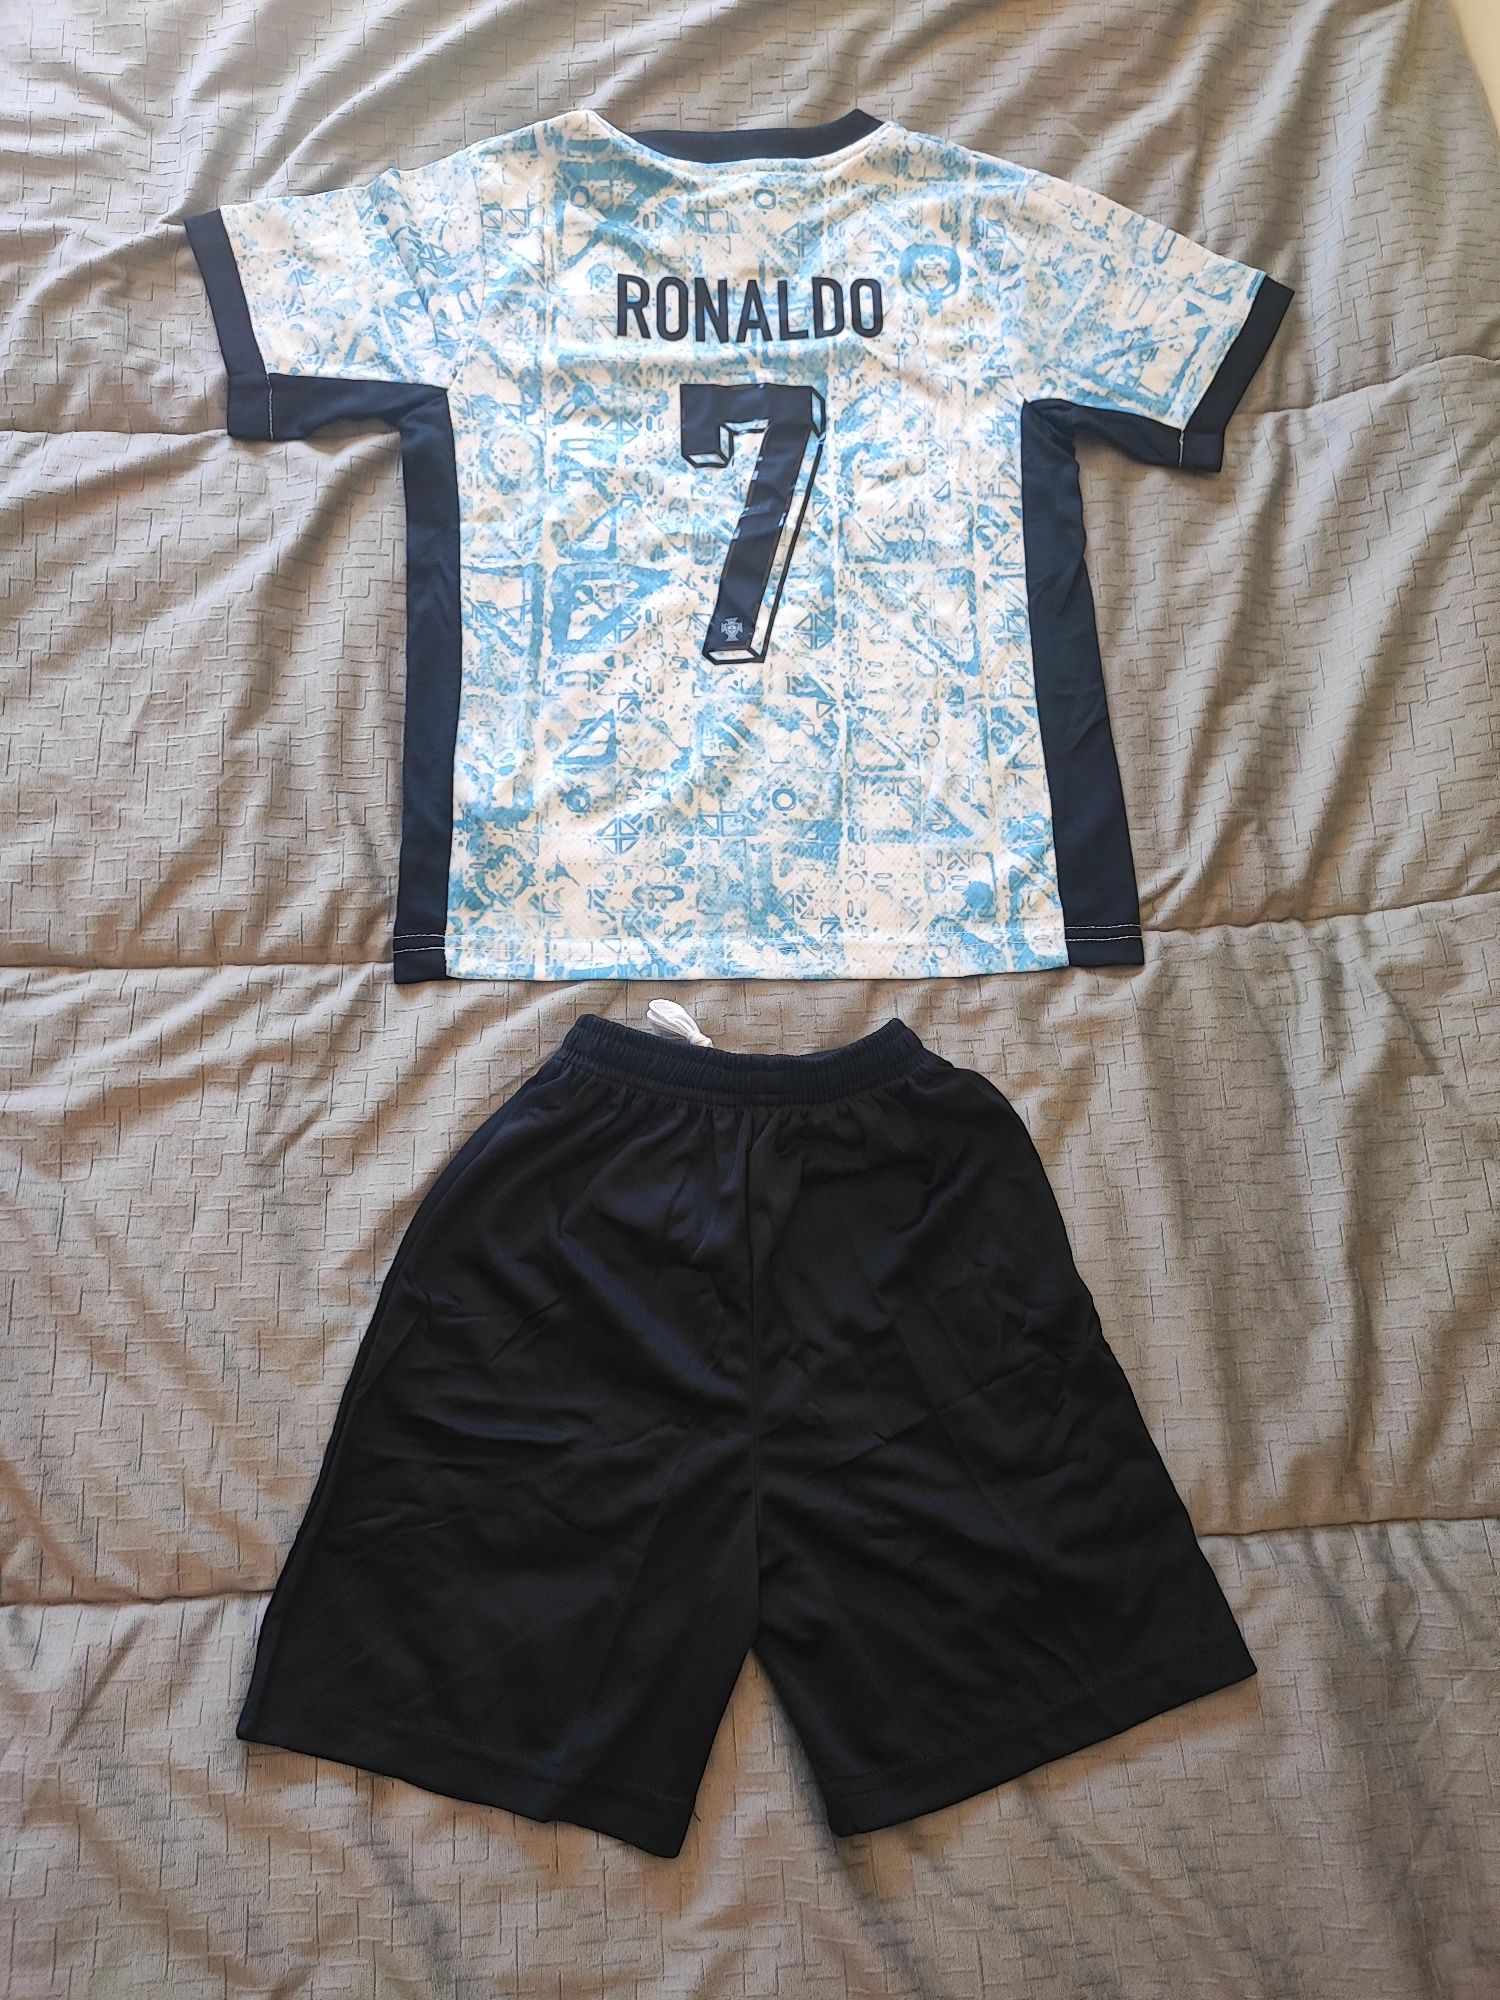 Kits criança Portugal Ronaldo